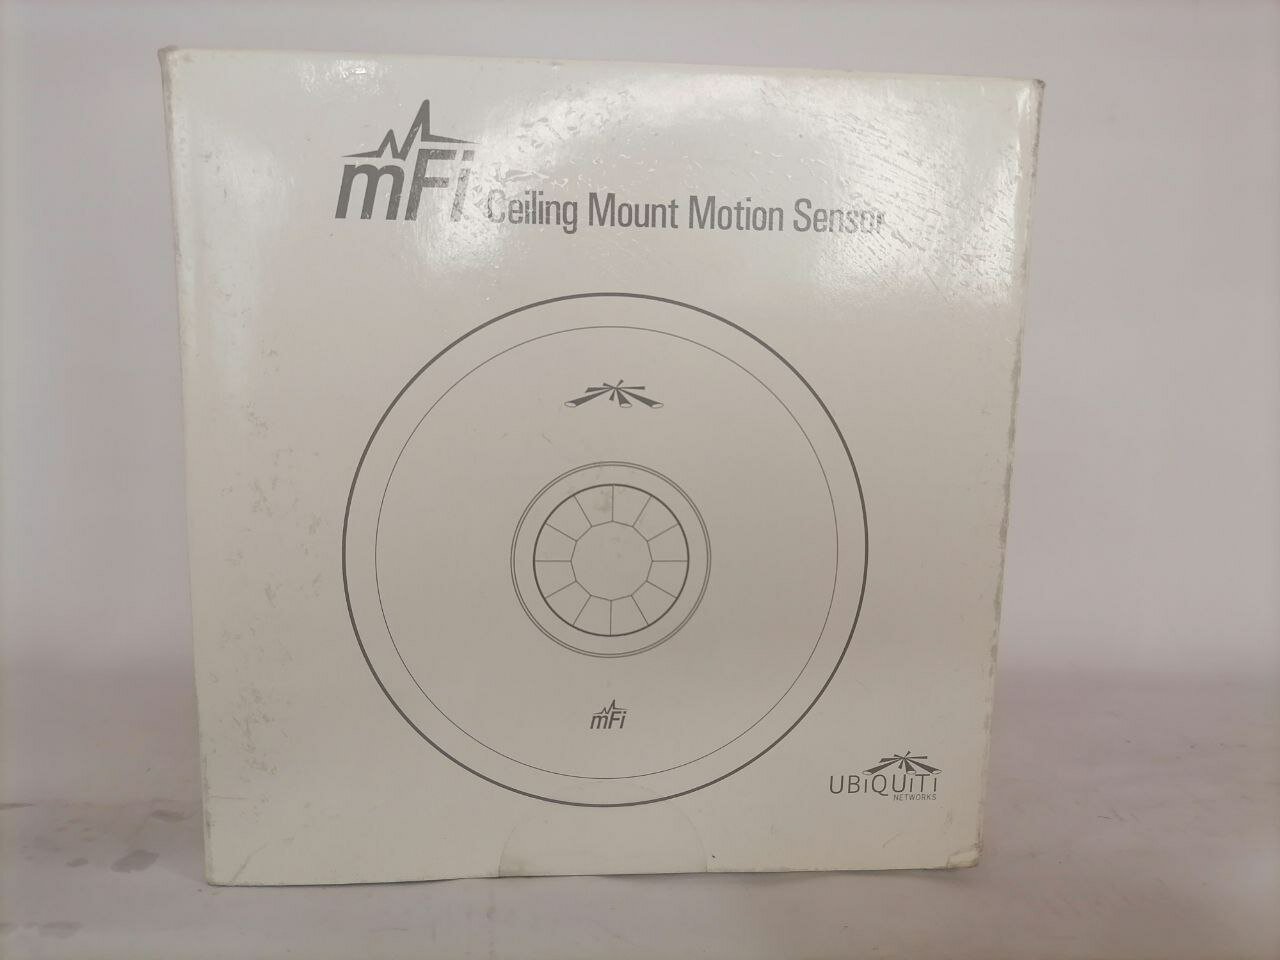 Датчик движения Ubiquiti mFi Ceiling Mount Motion Sensor